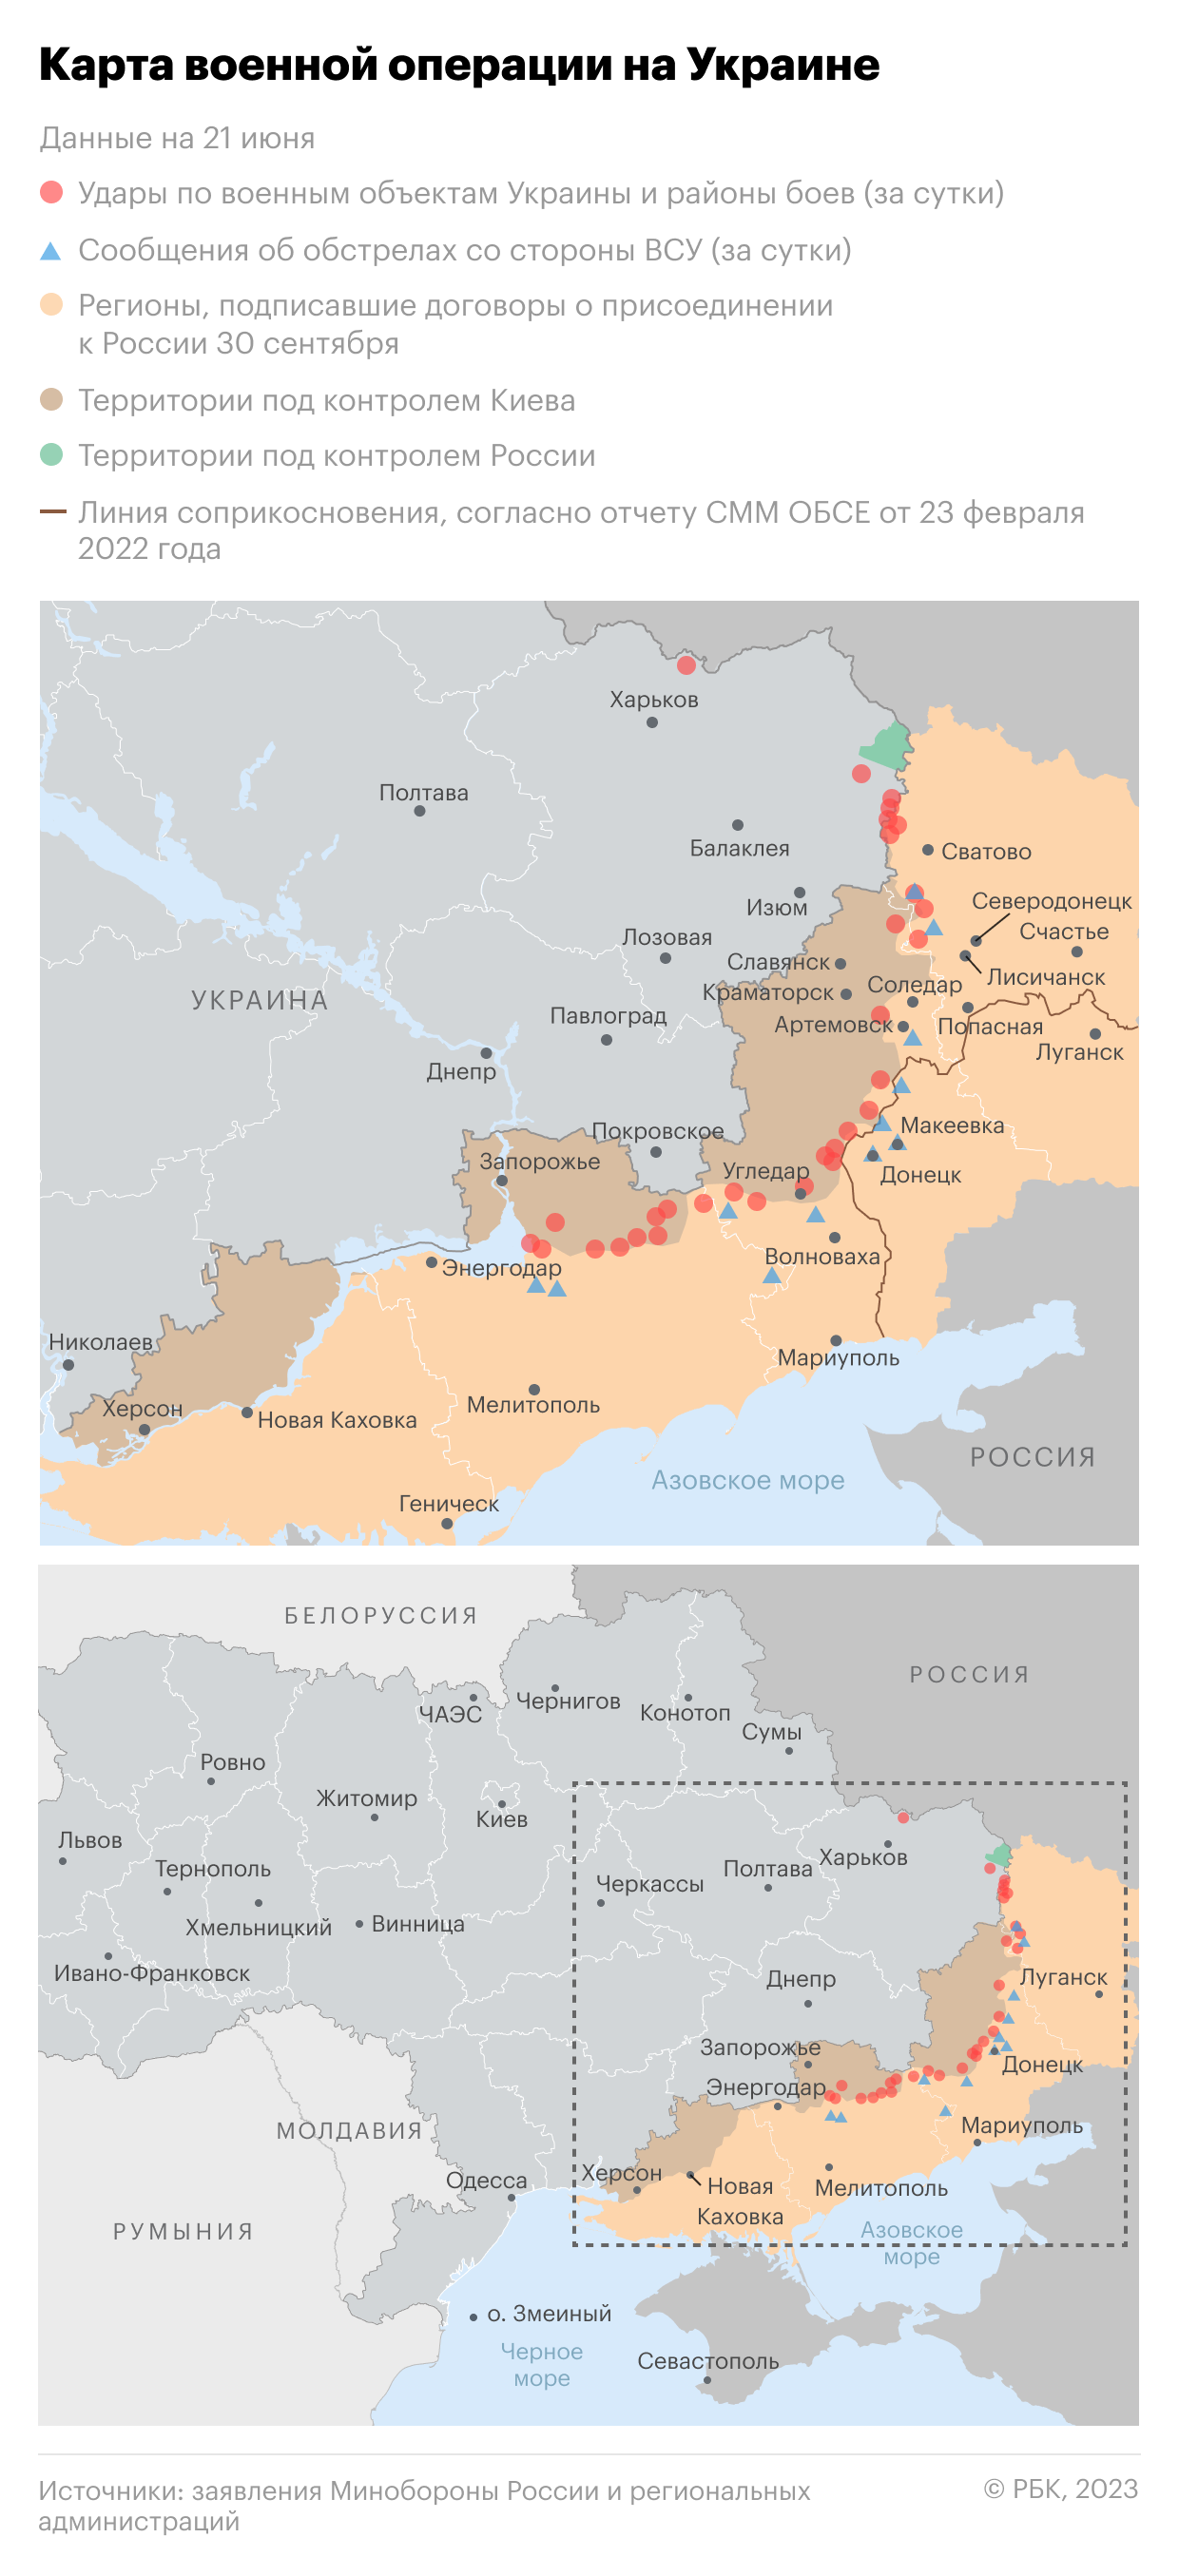 Военная операция на Украине. Карта на 21 июня"/>













